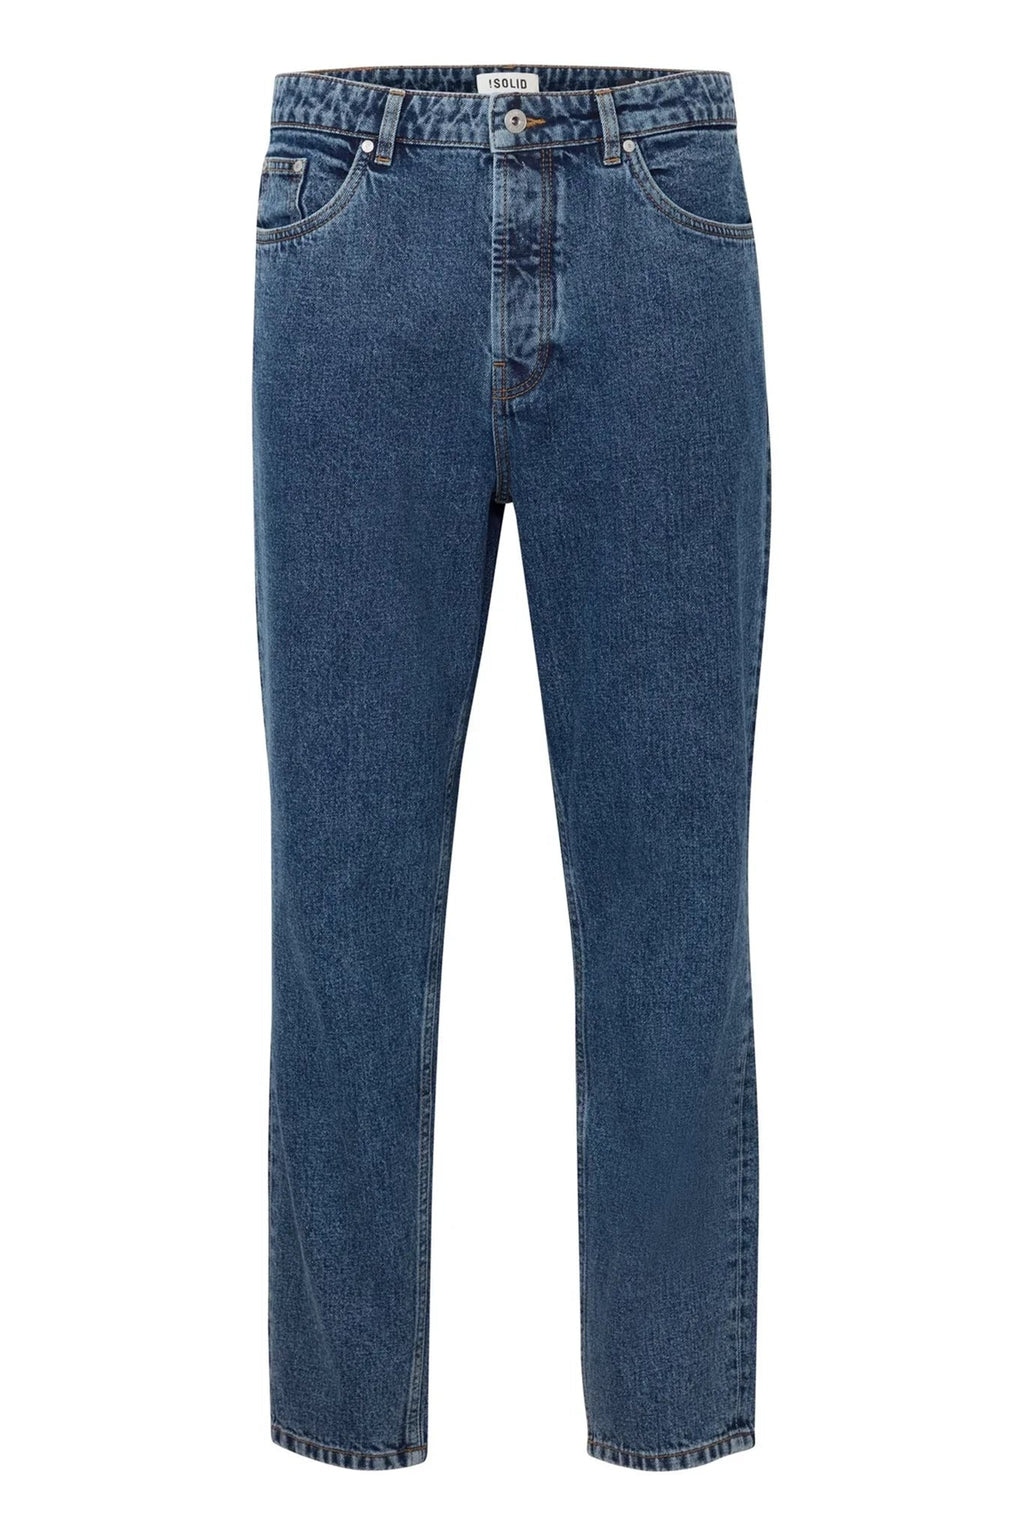 „Dylan Dad Fit Jeans“ - tamsiai mėlynas džinsinis audinys